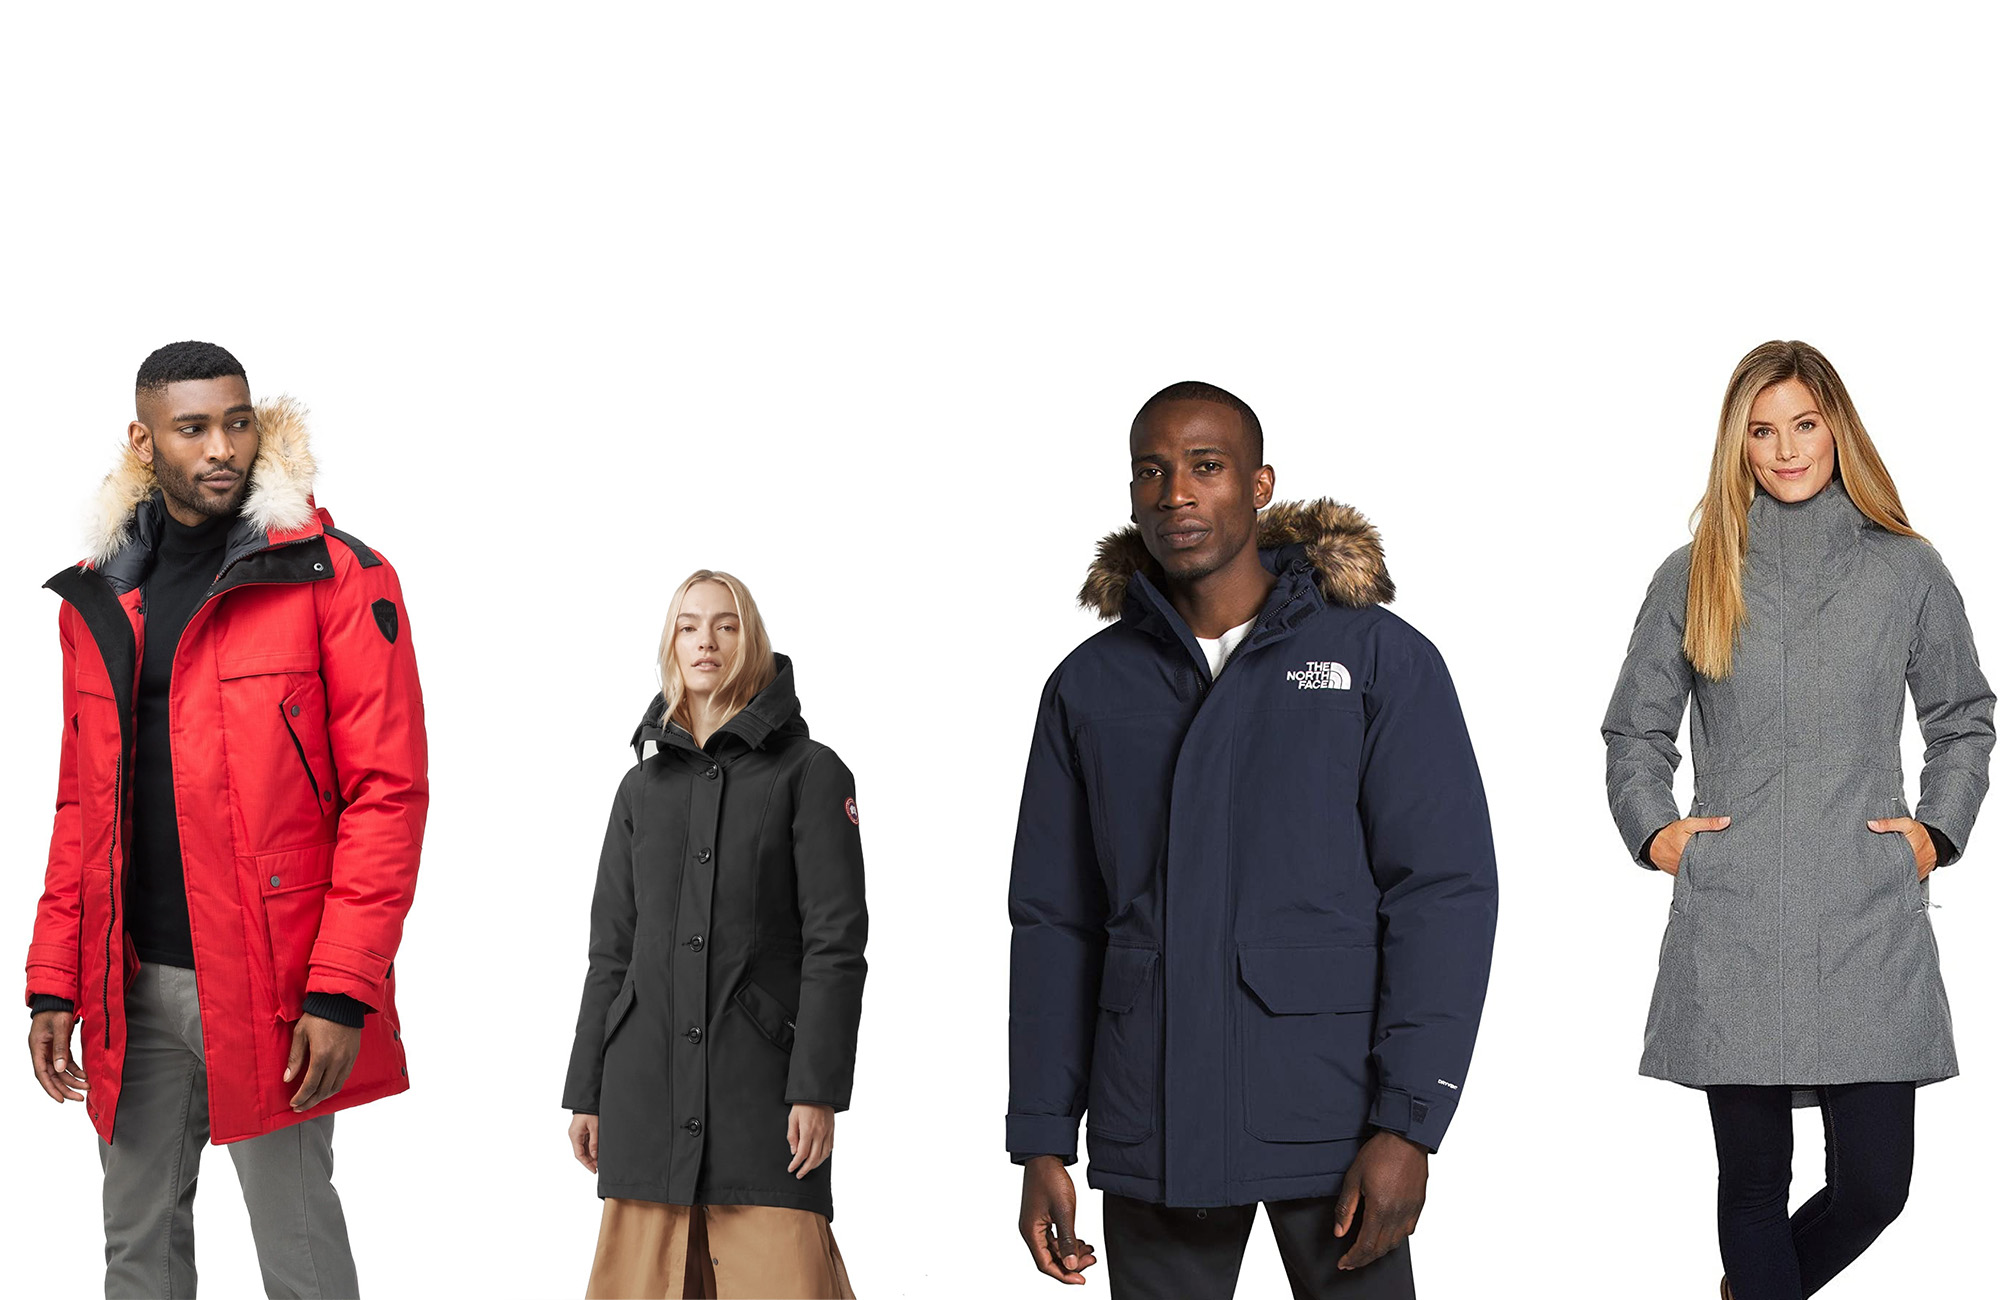 https://www.popsci.com/uploads/2021/04/18/best-winter-jackets.jpg?auto=webp